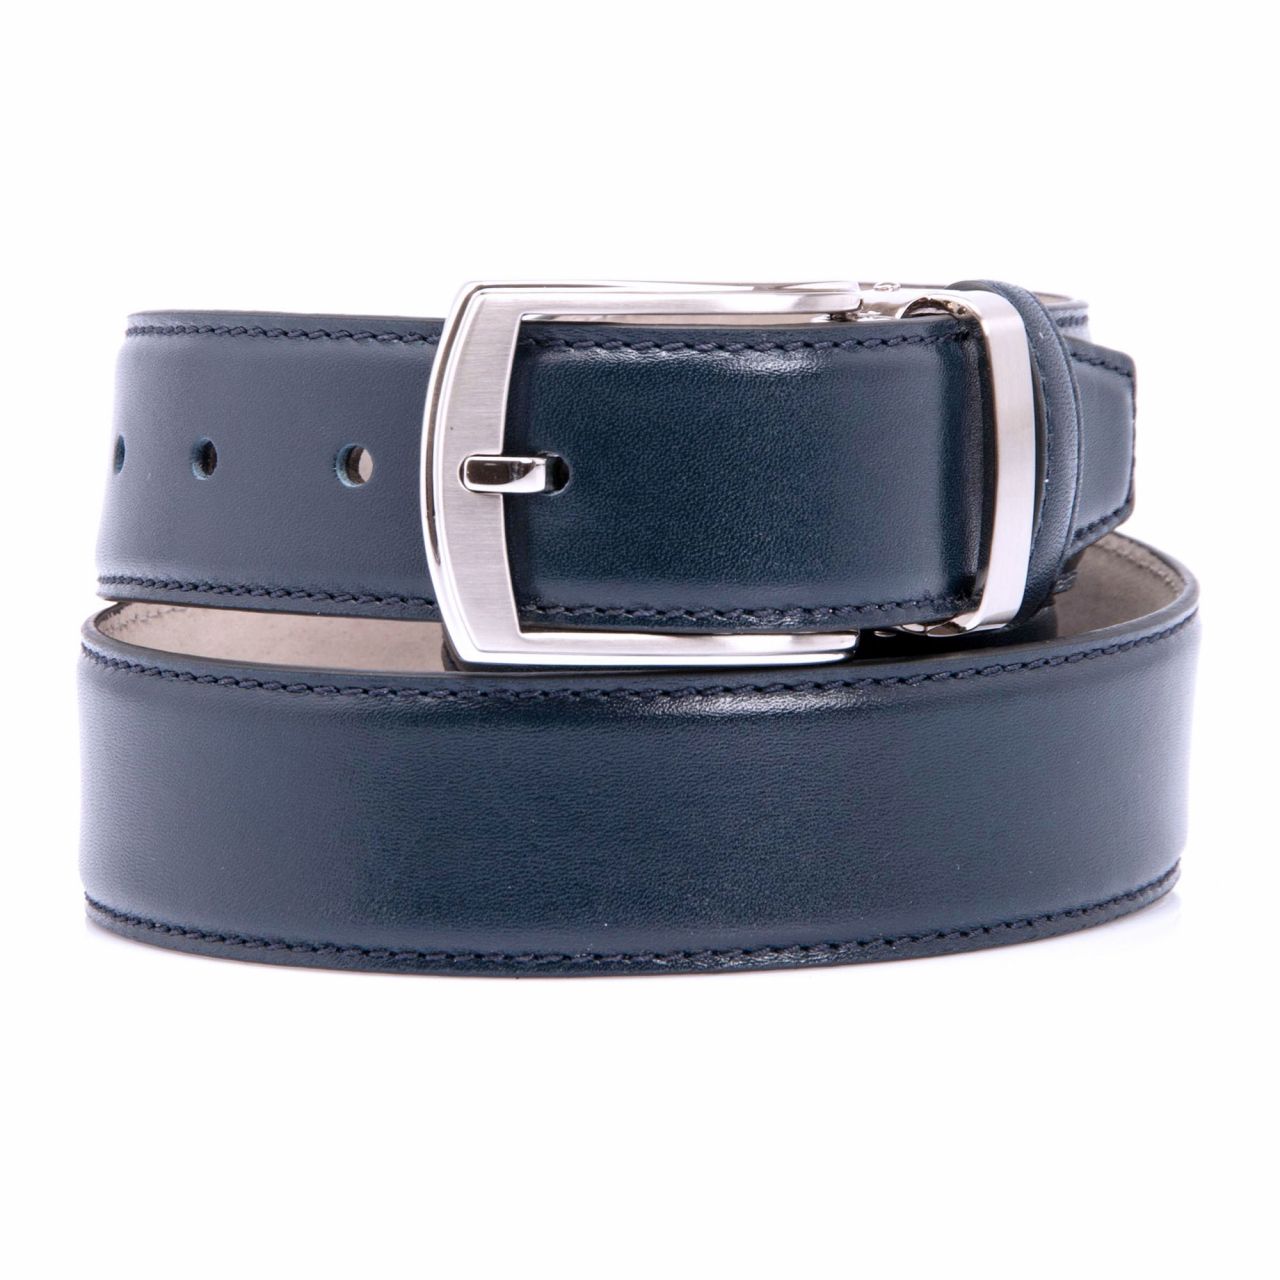 Men's belt in dark blue